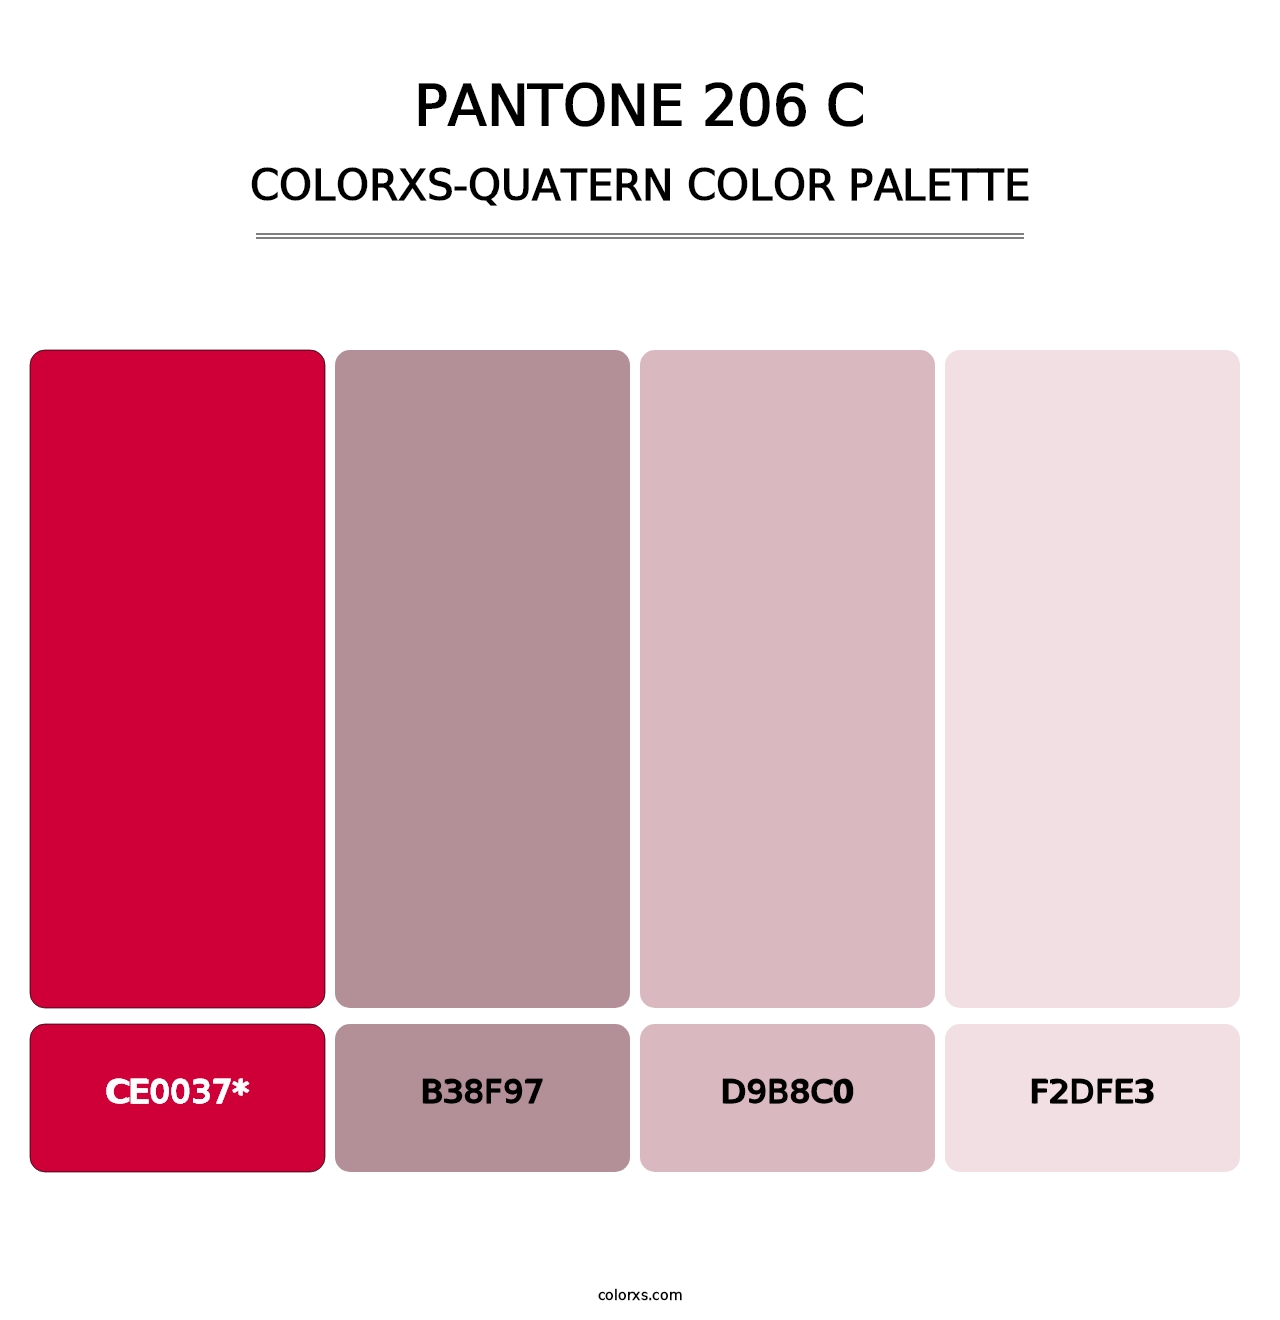 PANTONE 206 C - Colorxs Quatern Palette